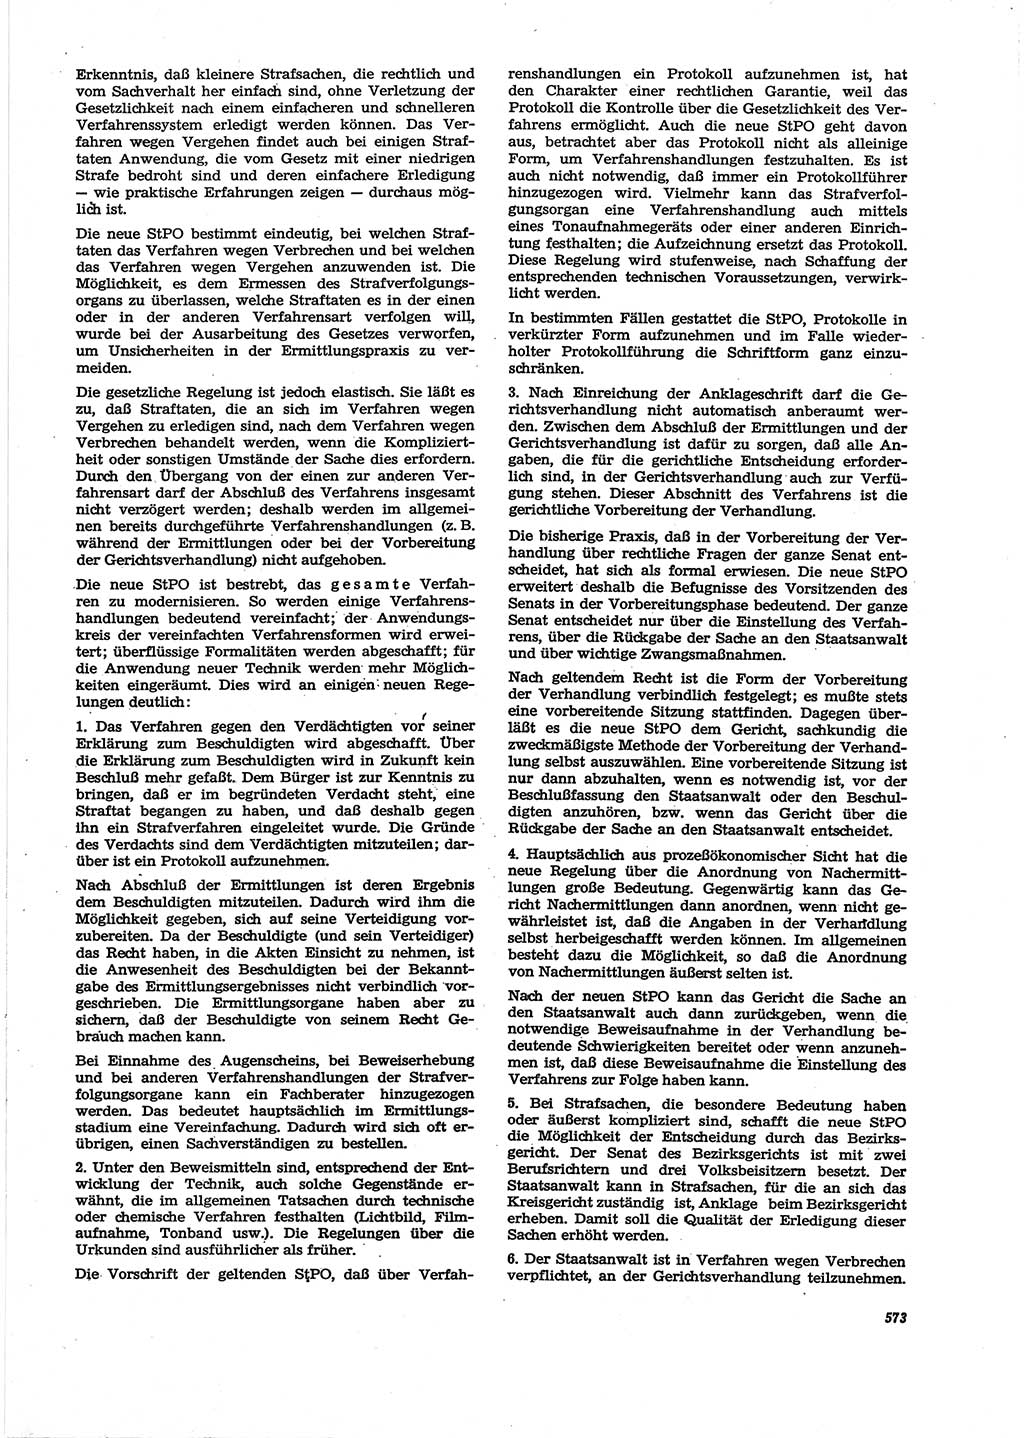 Neue Justiz (NJ), Zeitschrift für Recht und Rechtswissenschaft [Deutsche Demokratische Republik (DDR)], 27. Jahrgang 1973, Seite 573 (NJ DDR 1973, S. 573)